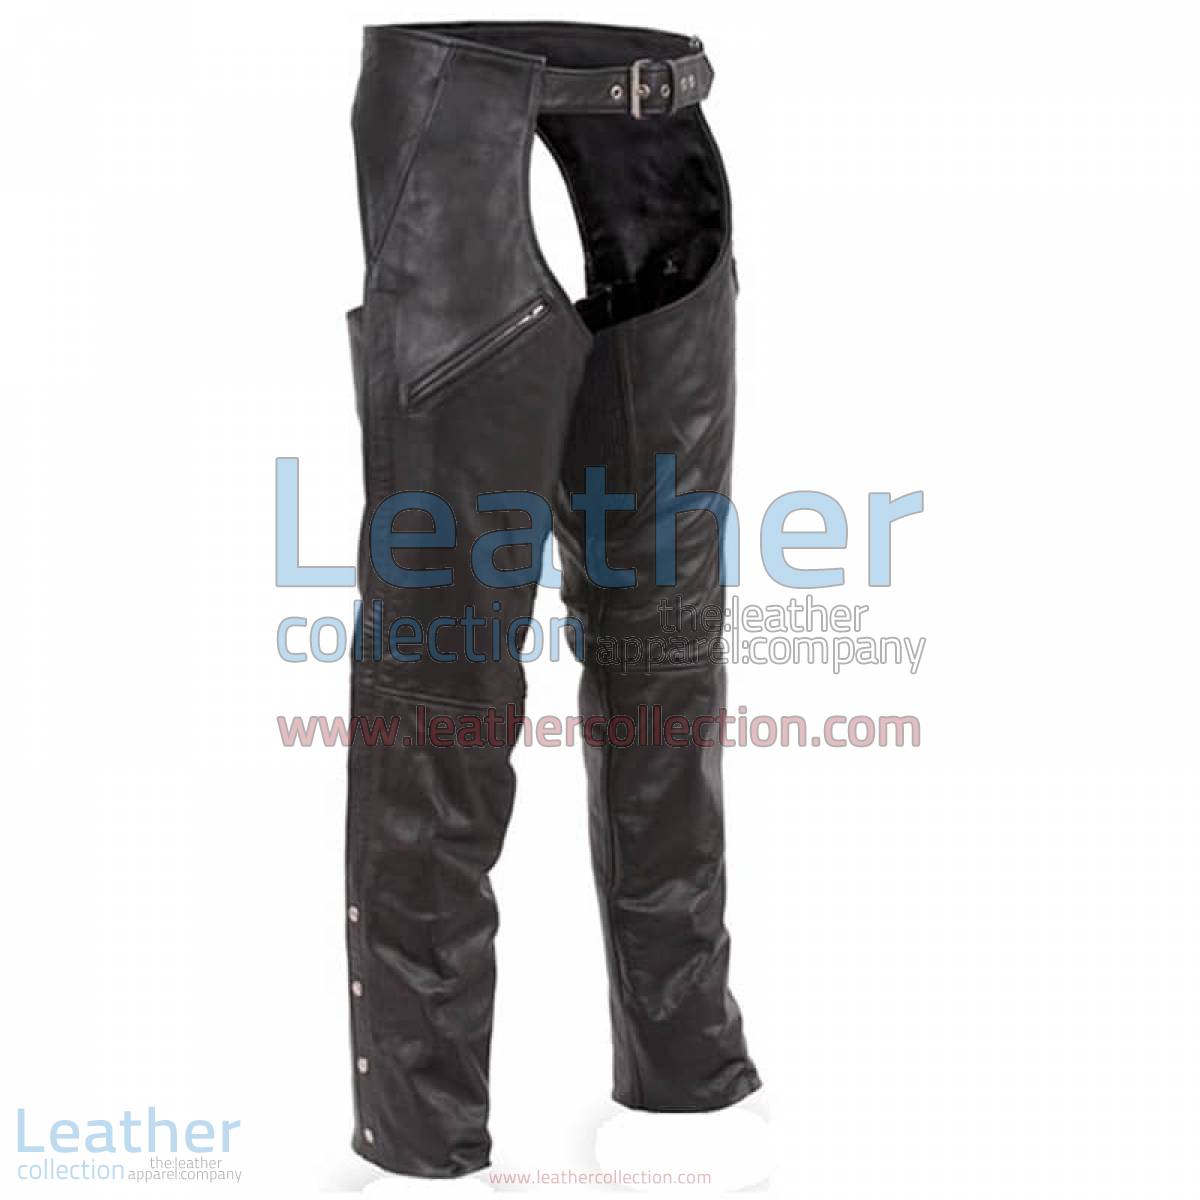 Premium Leather Biker Chaps | biker chaps,leather chaps